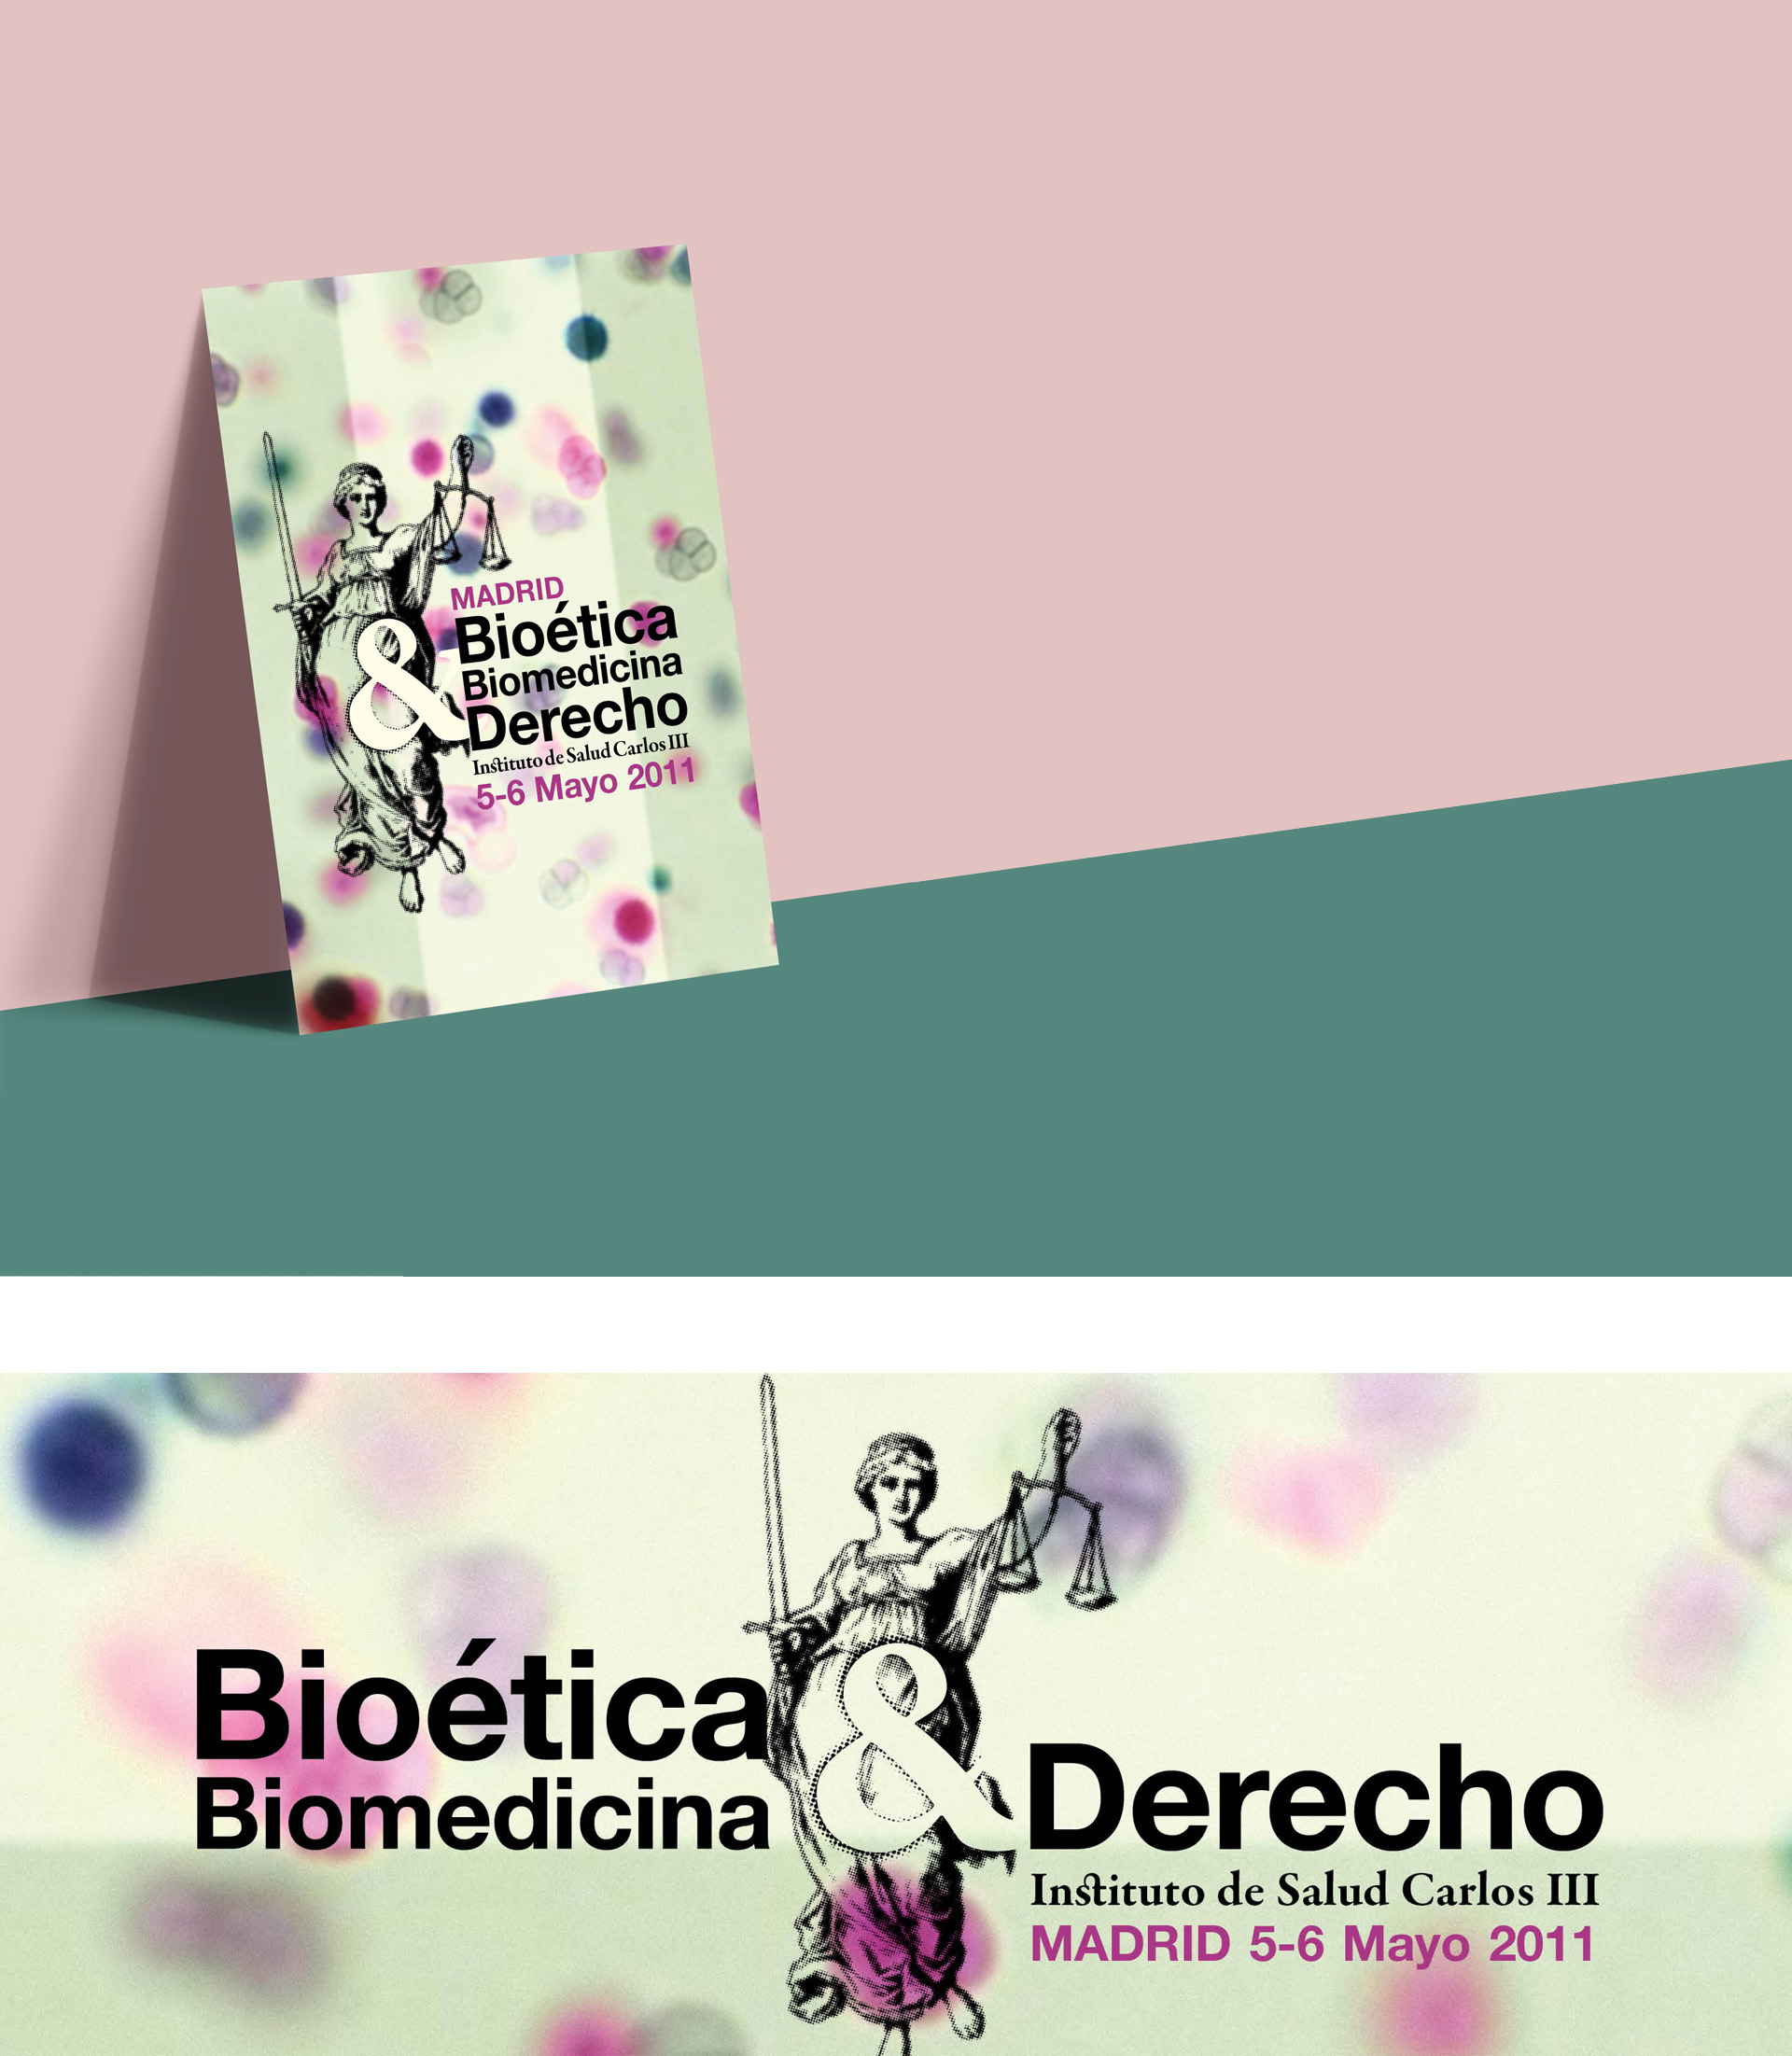 Diseño corporativo,Bioética, Biomedicina & Derecho, Susana Cid